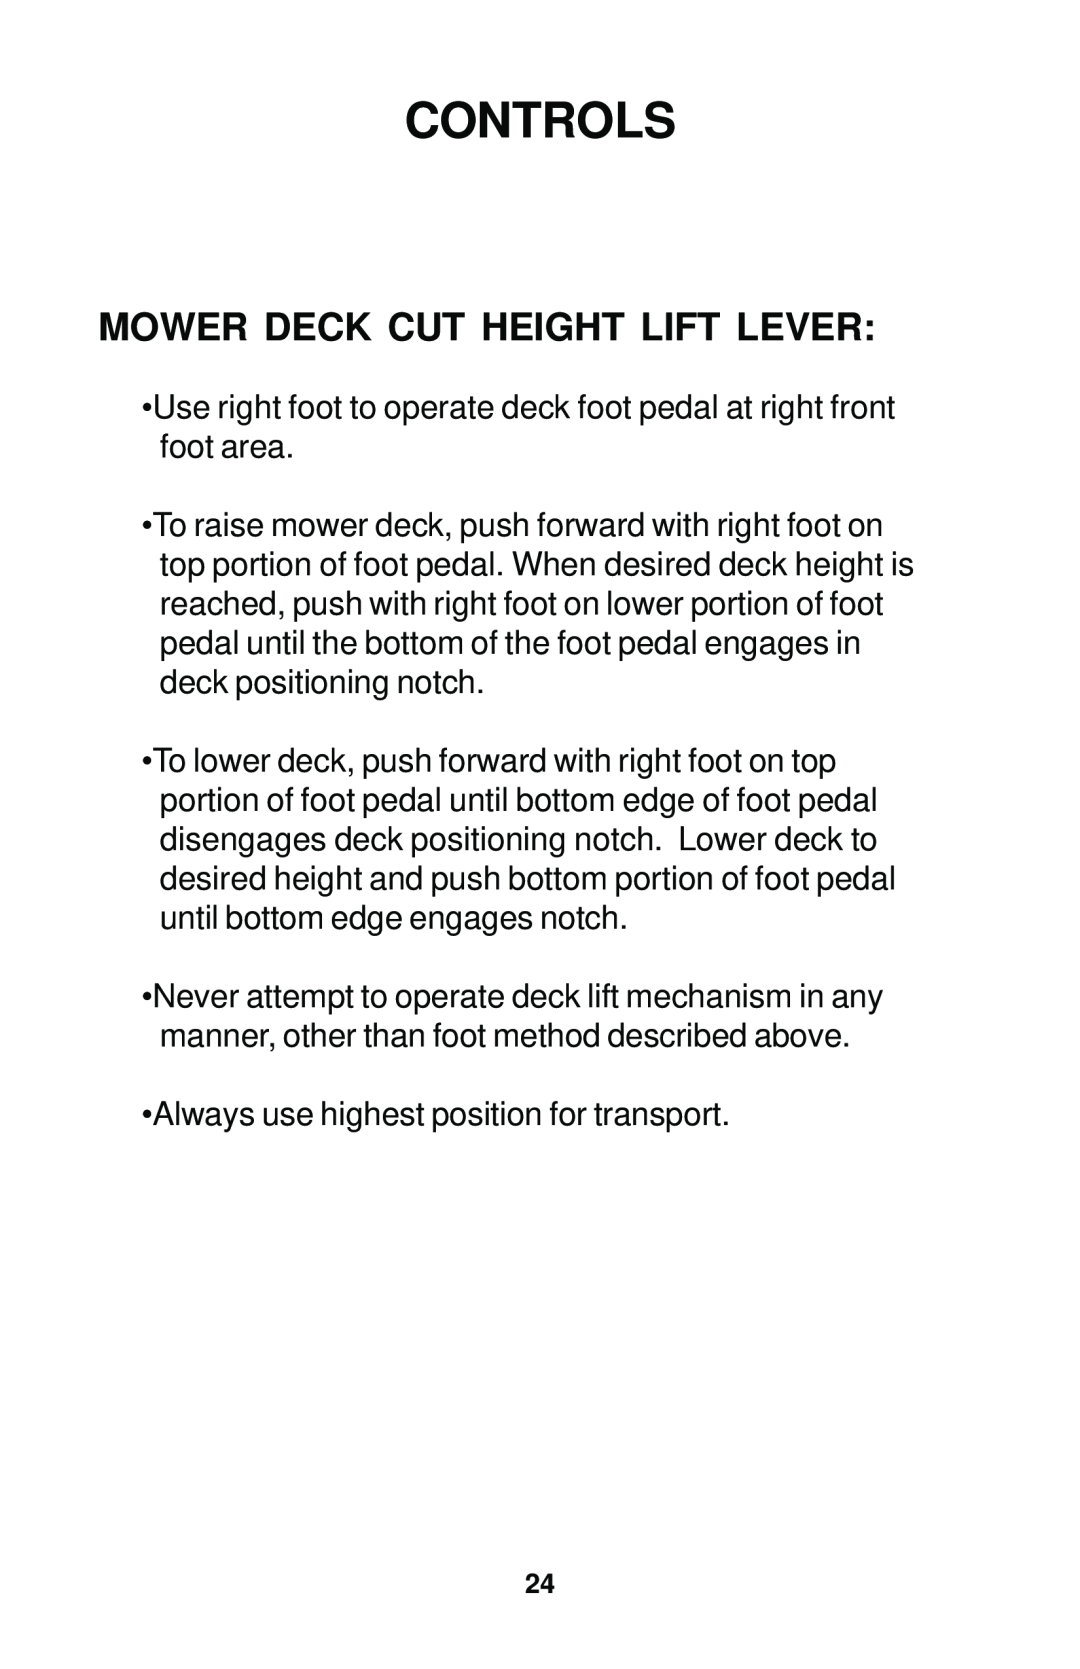 Dixon 17823-0704 manual Mower Deck Cut Height Lift Lever, Controls 